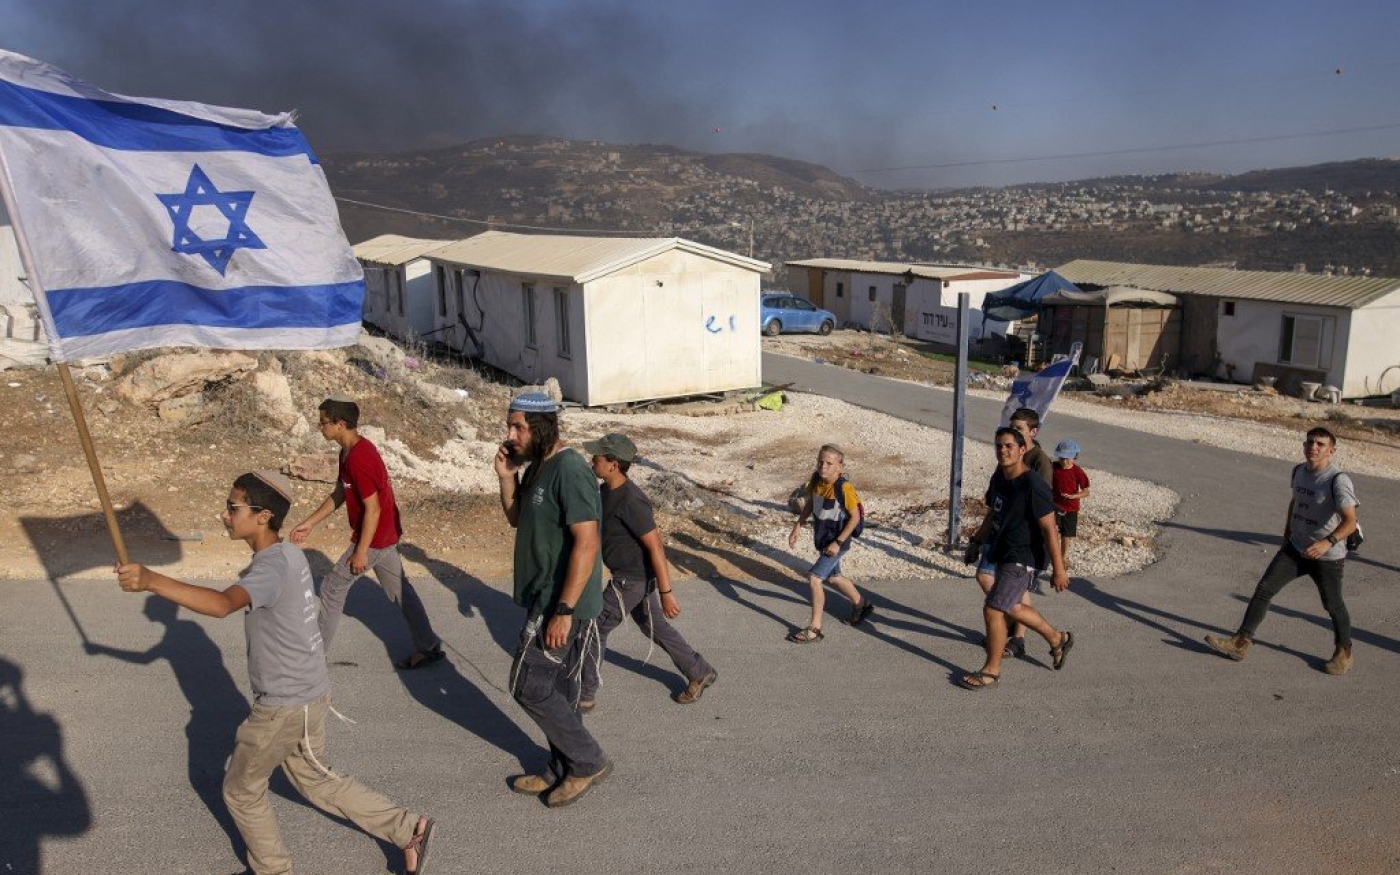 Des colons israéliens défilent dans un nouvel avant-poste (colonie illégale selon le droit israélien) en Cisjordanie occupée, le 21 juin 2021 (AFP)